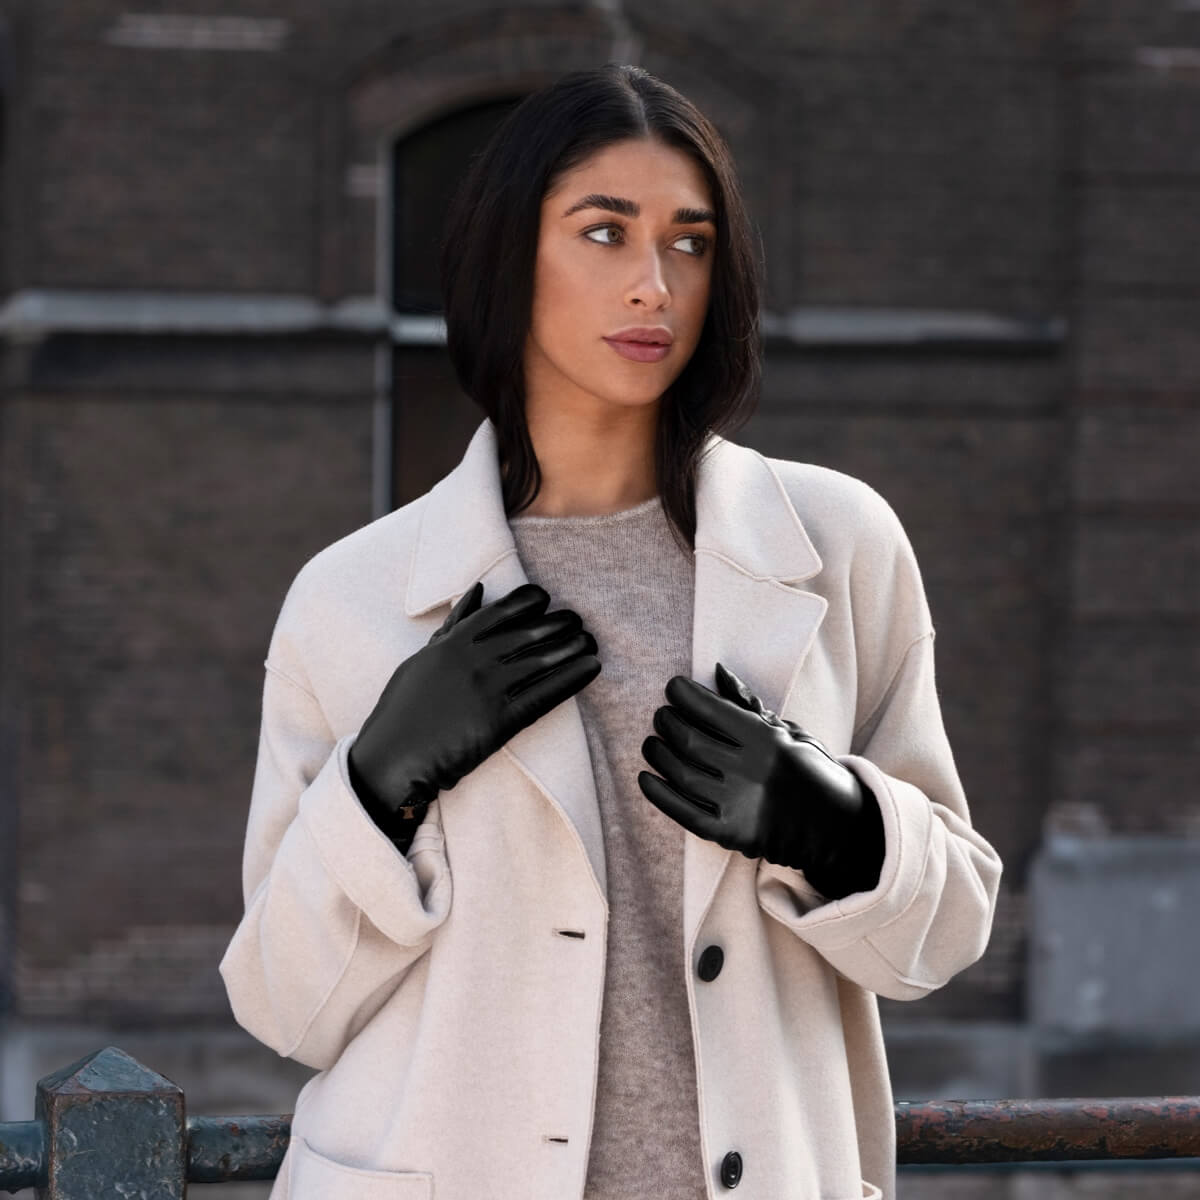 Women's Leather Gloves Black Ivy - Schwartz & von Halen® - Premium Leather Gloves - 9